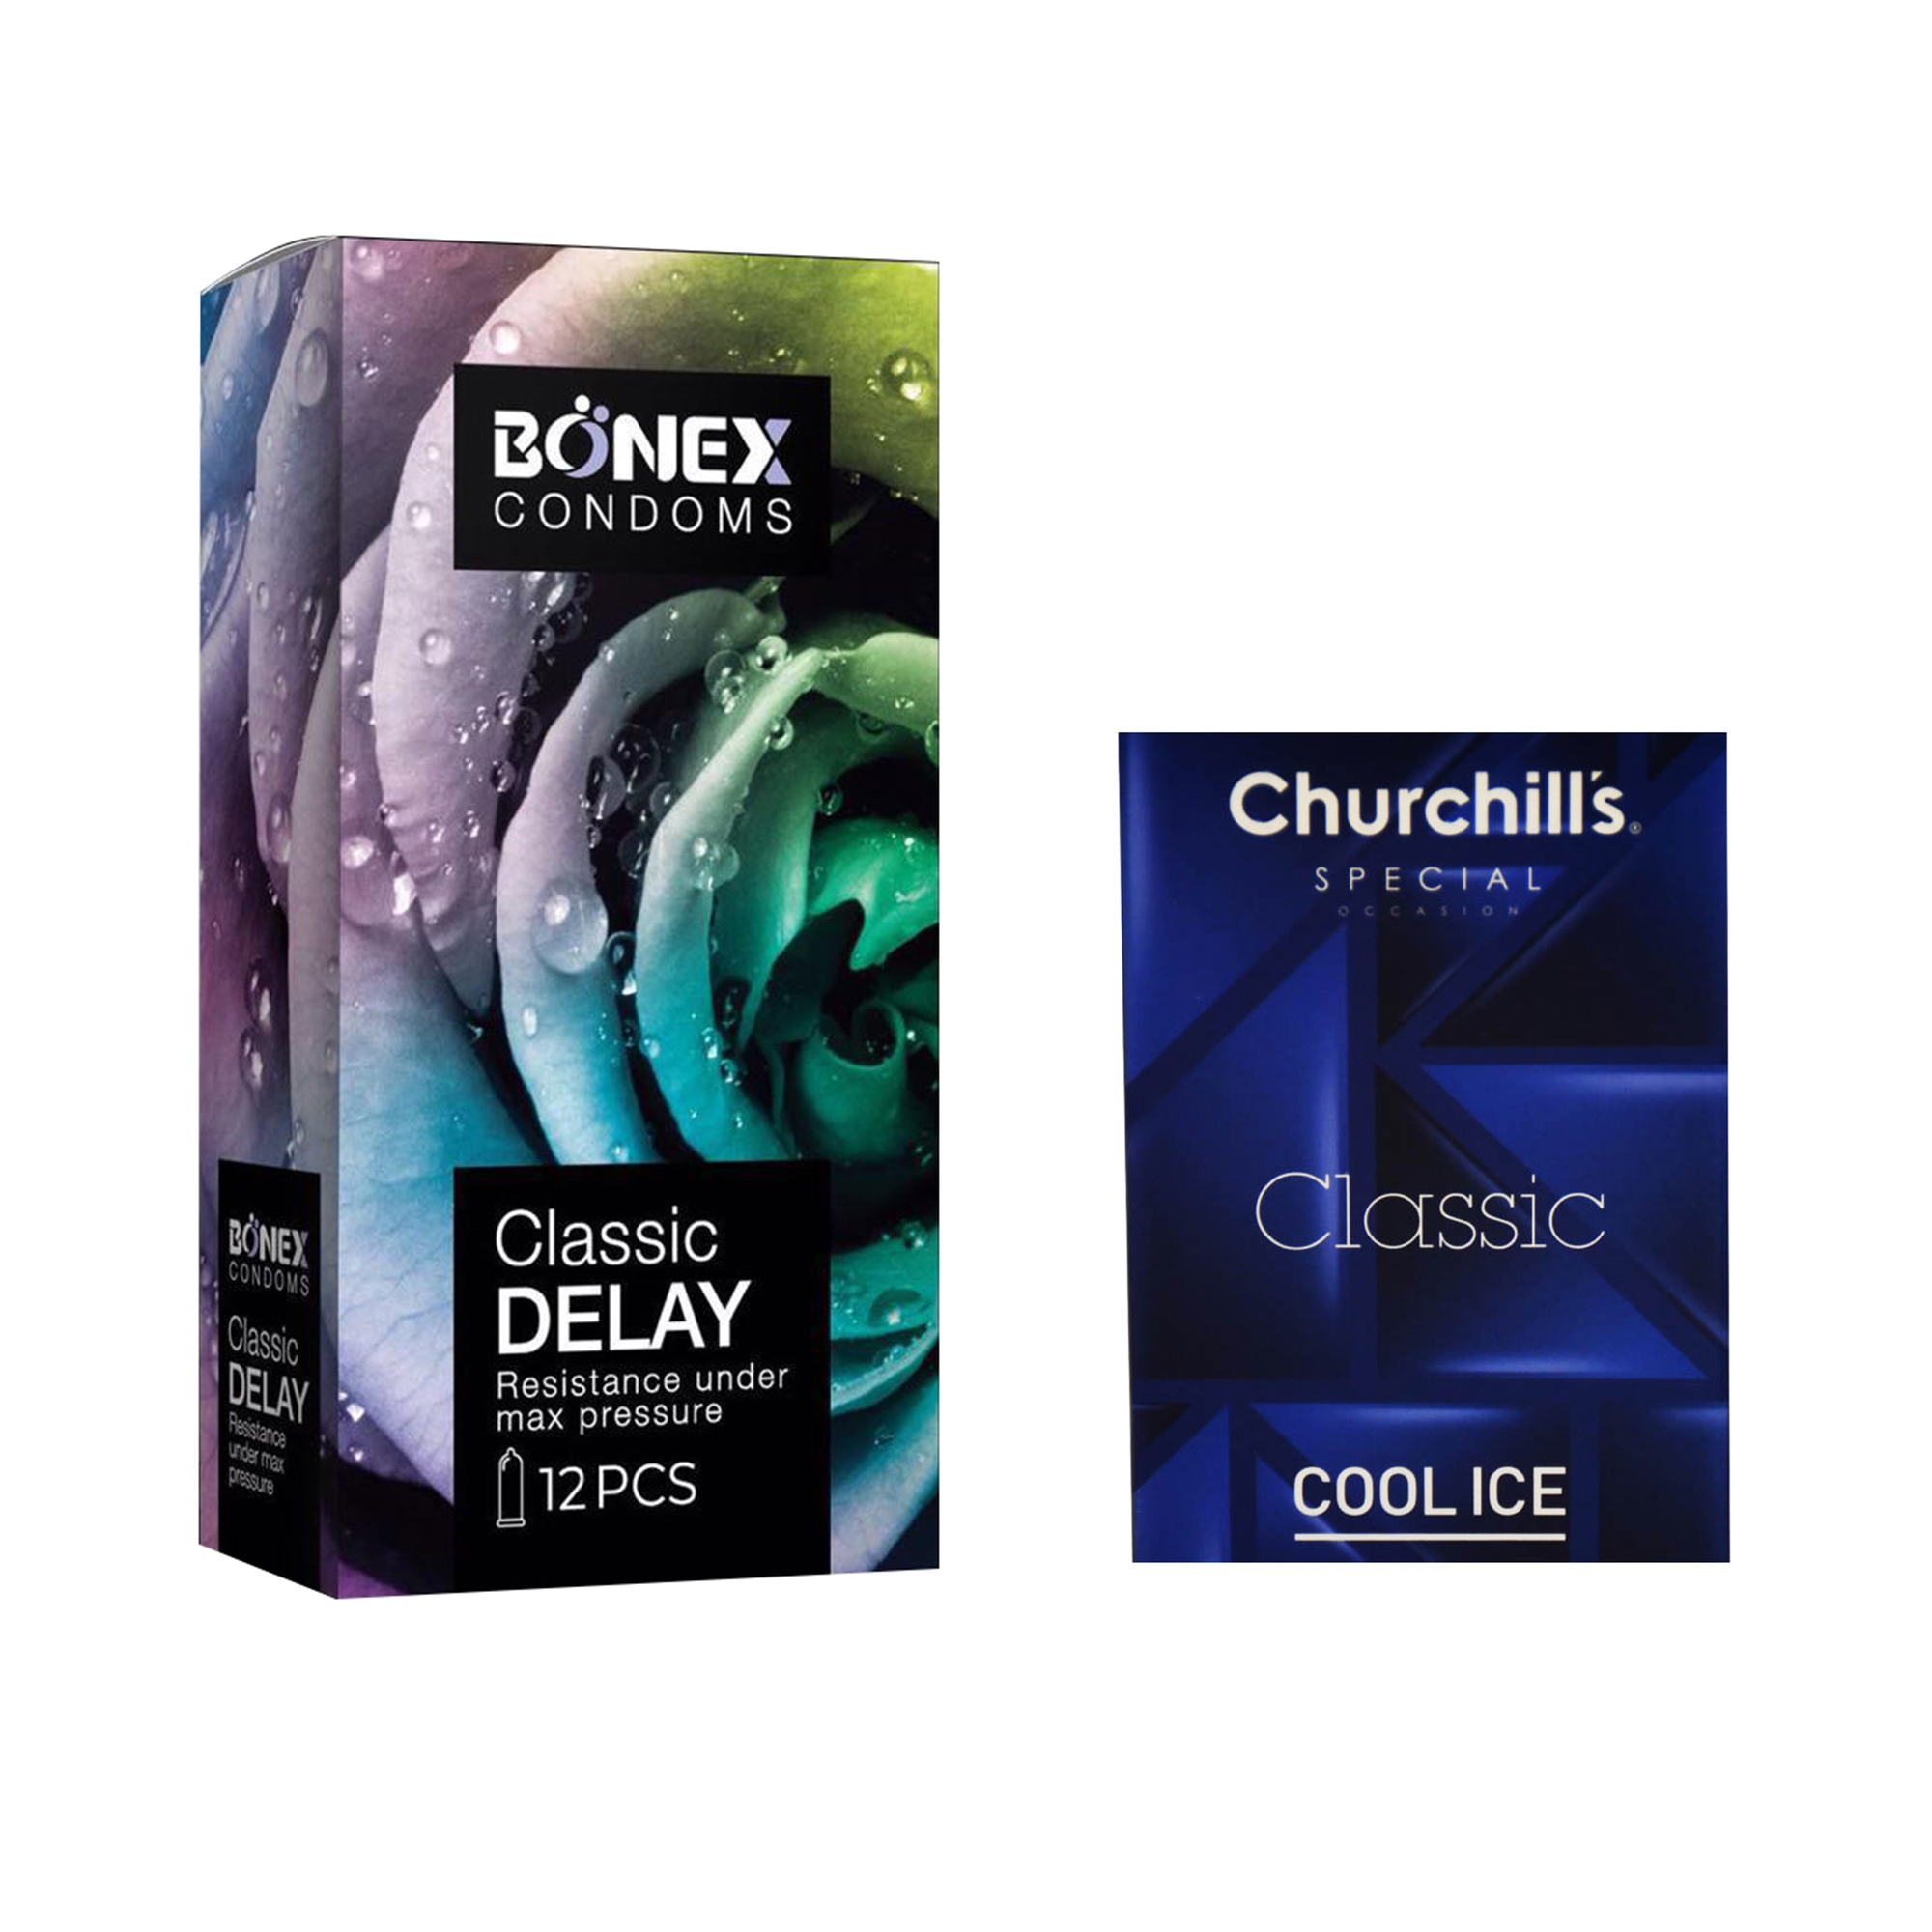 کاندوم بونکس مدل Classic Delay بسته 12 عددی به همراه کاندوم چرچیلز مدل Cool Ice بسته 3 عددی